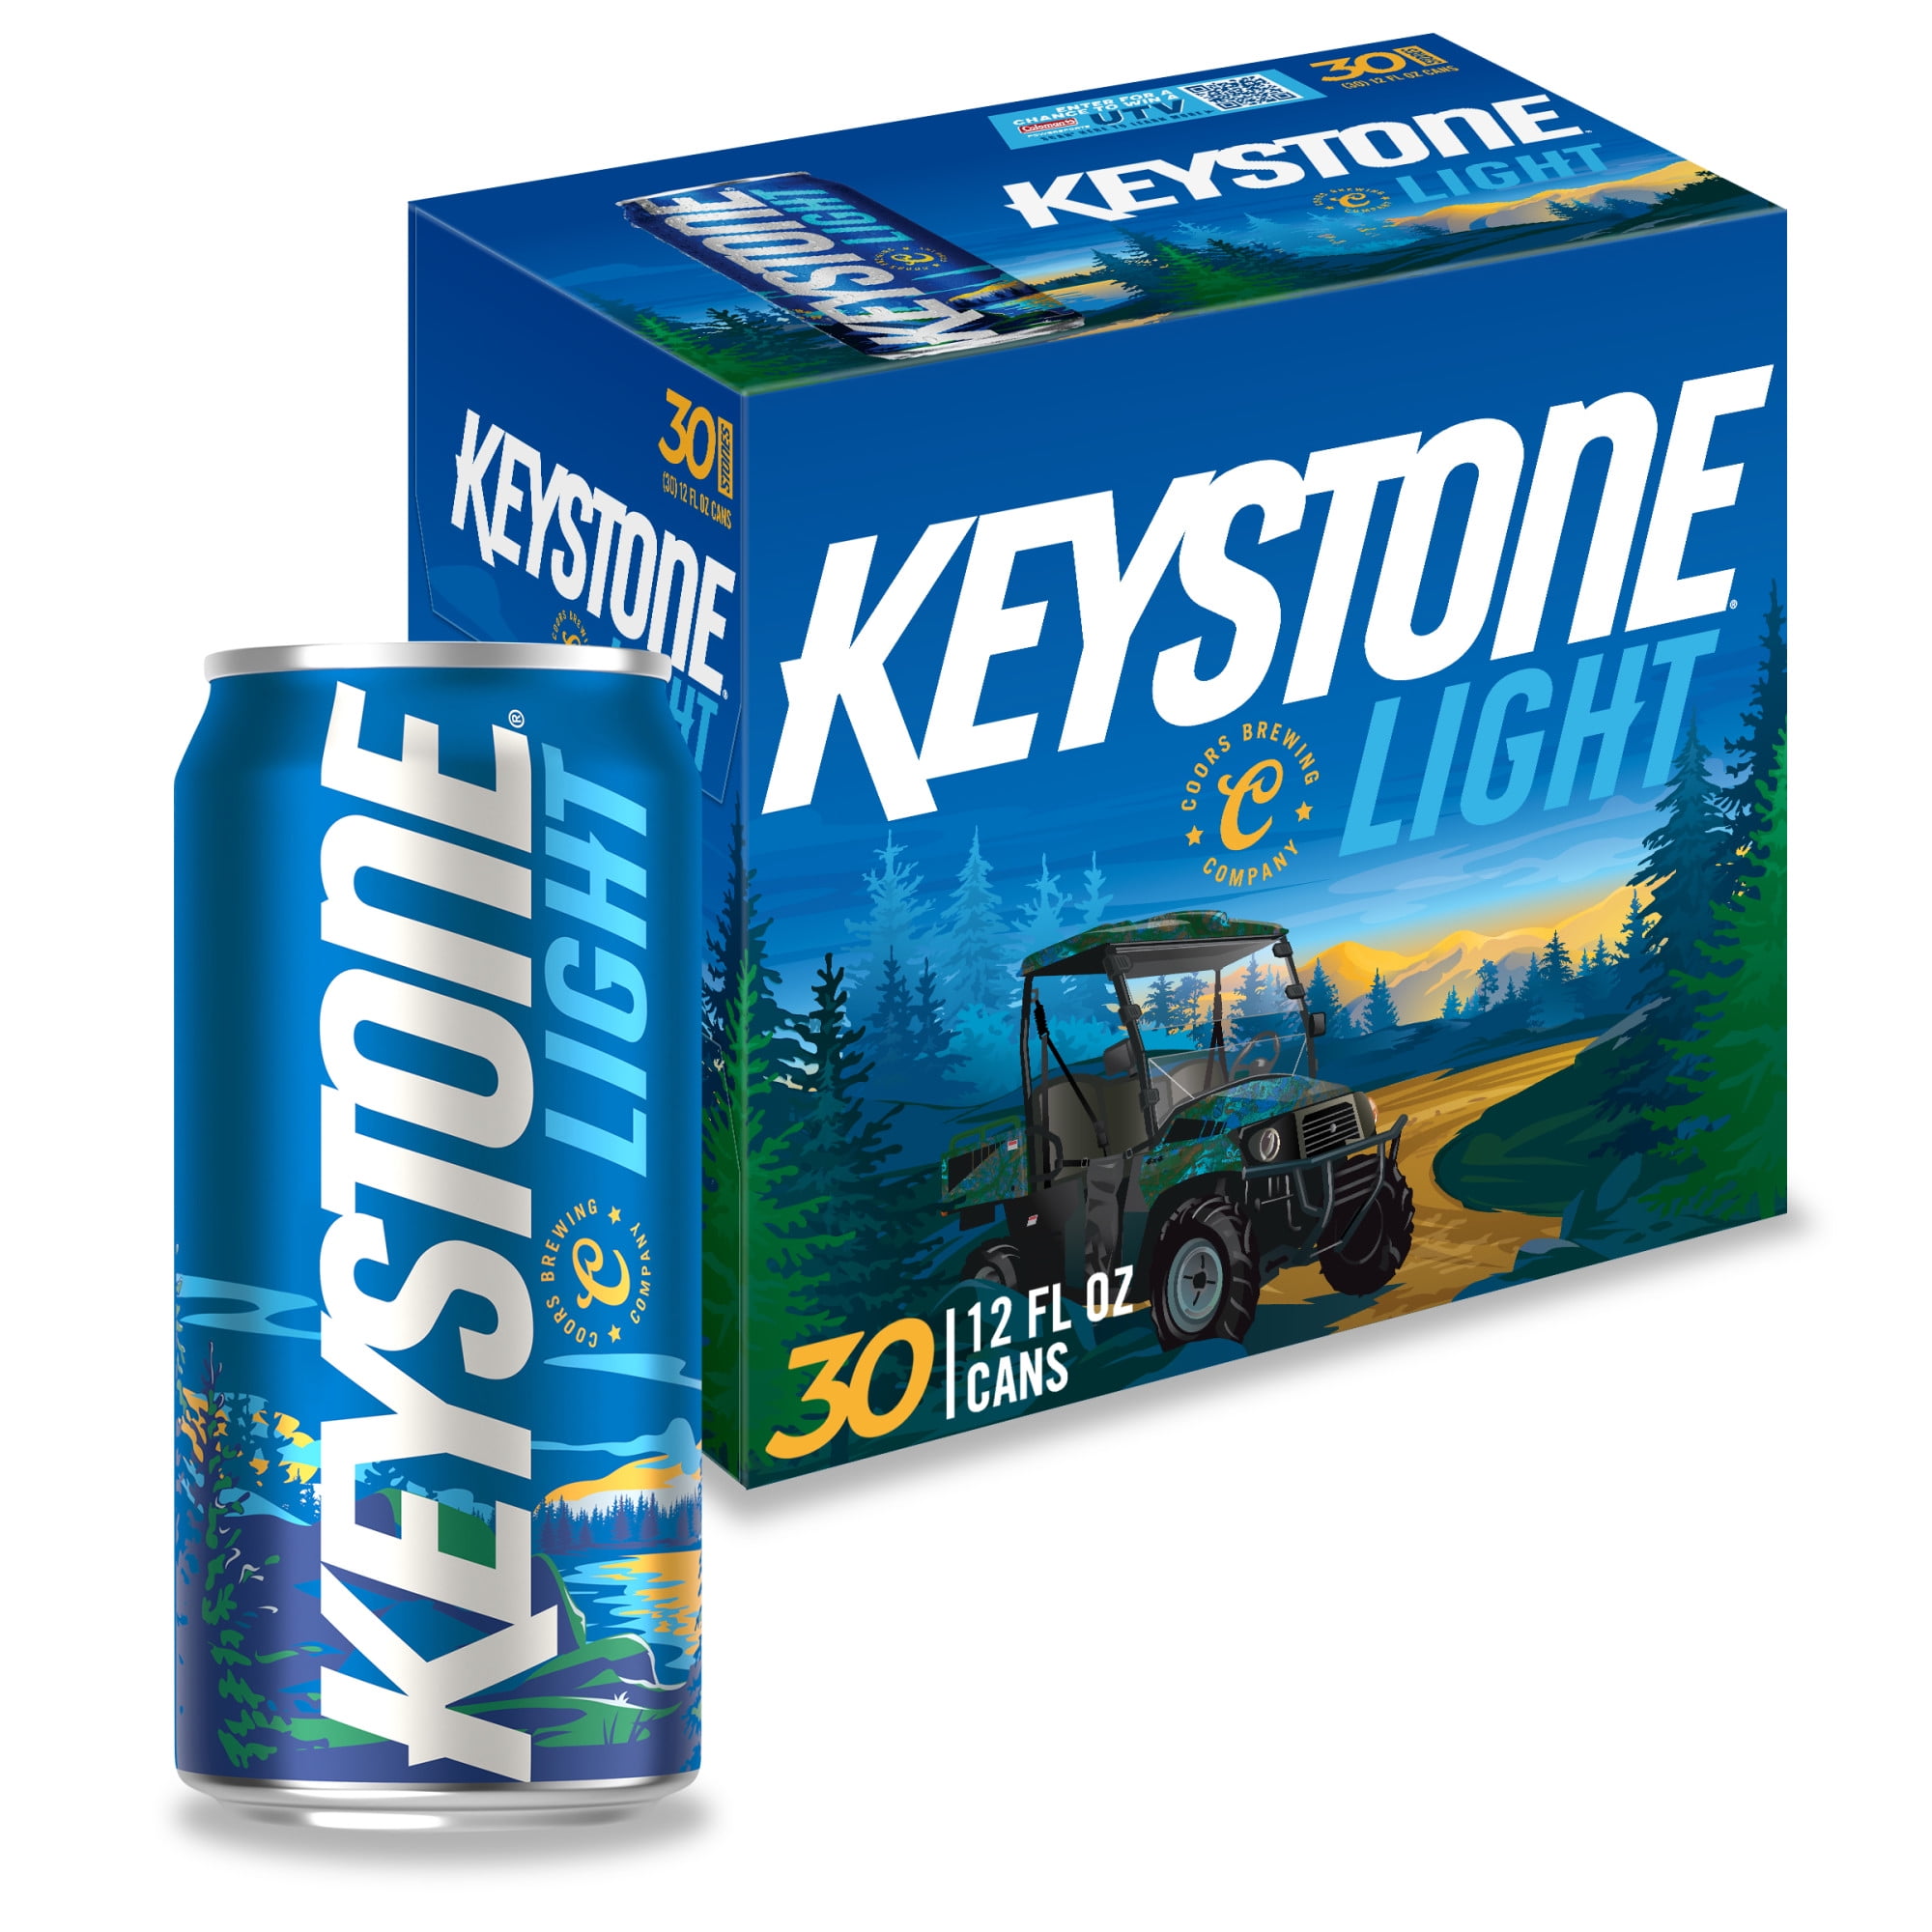 Selskab Individualitet køkken Keystone Light Lager Beer, 30 Pack, 12 fl oz Cans, 4.1% ABV - Walmart.com